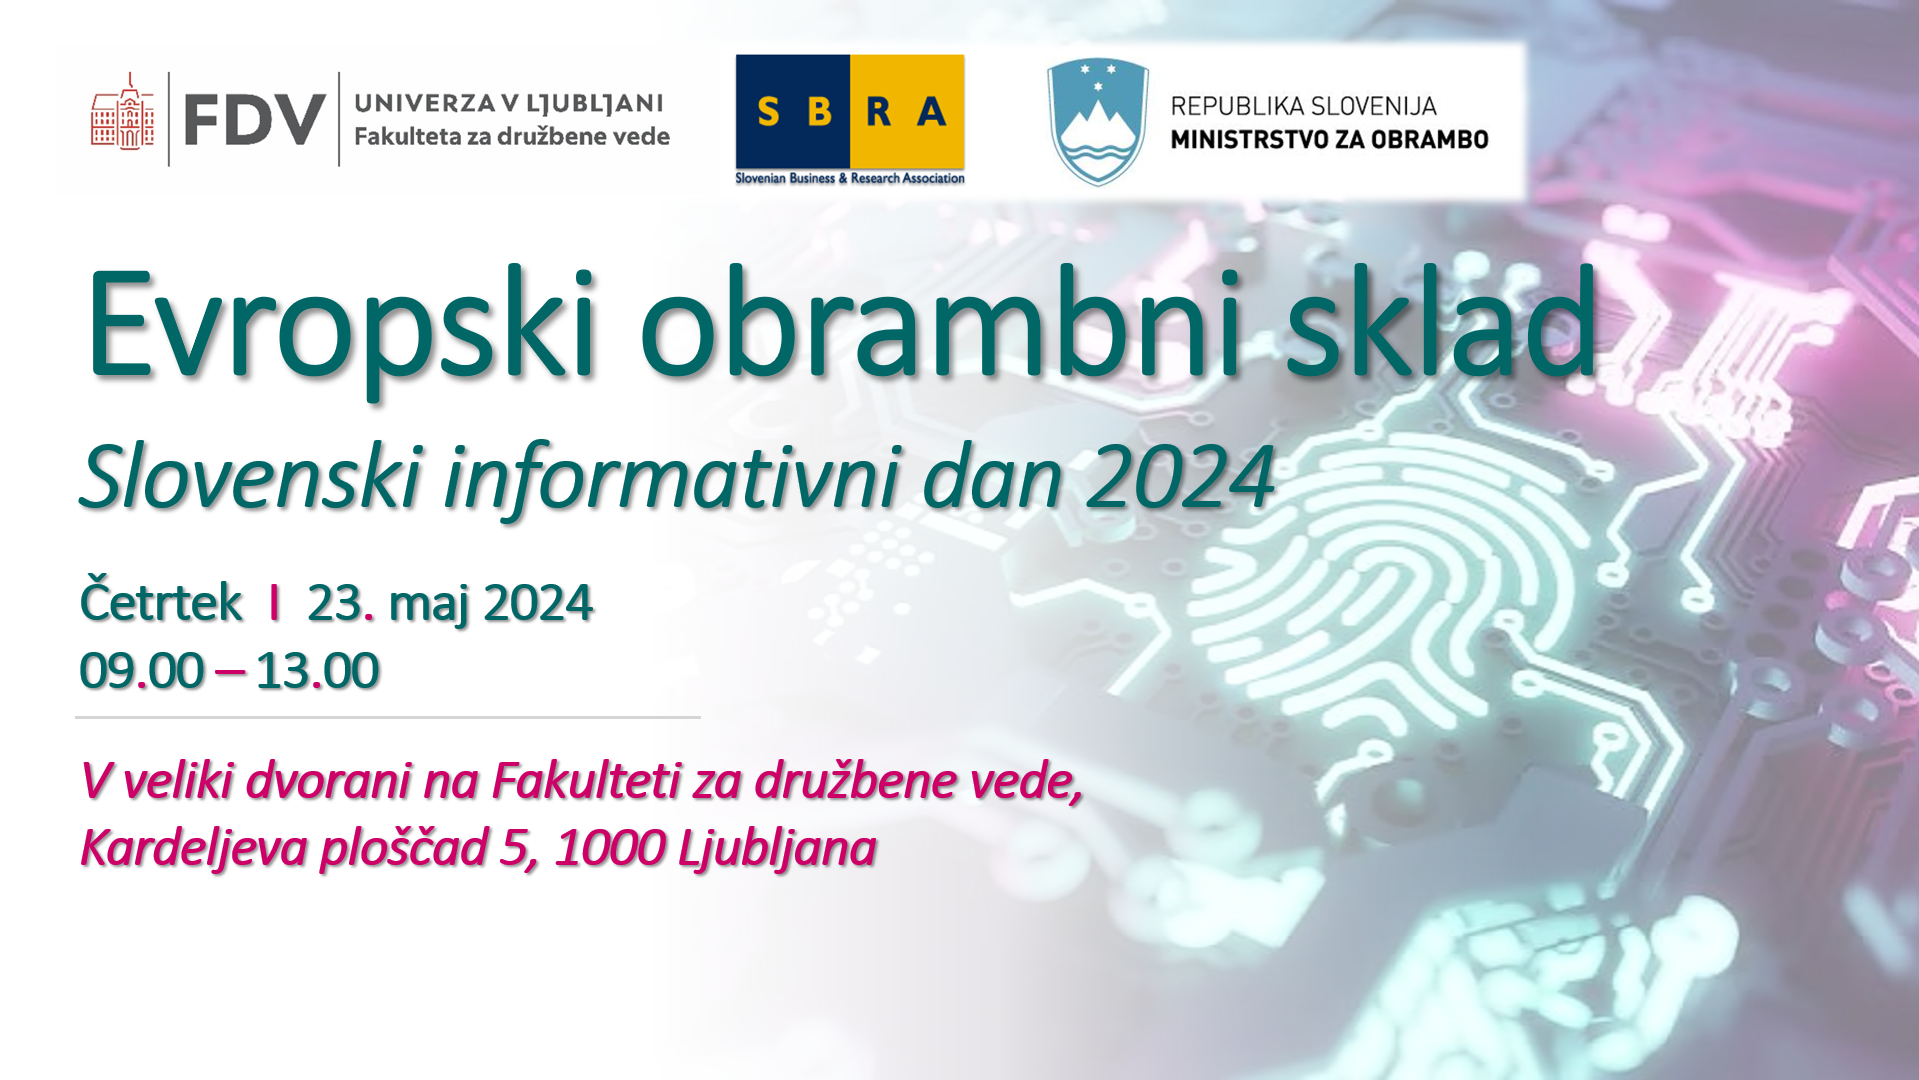 Vabilo: Evropski obrambni sklad - Slovenski informativni dan 2024; 23. maj 2024 